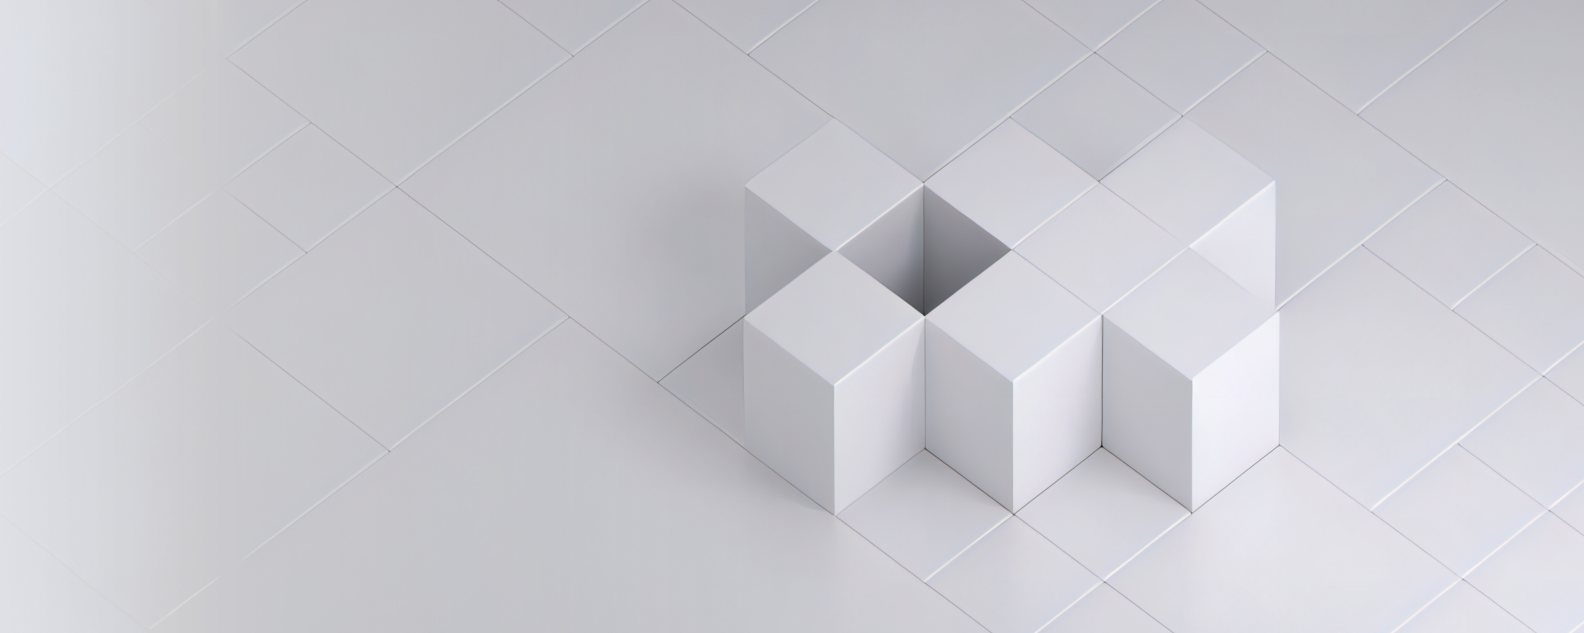 七个白色立方体排列在白色正方形网格上所形成图案的逼真图像或照片